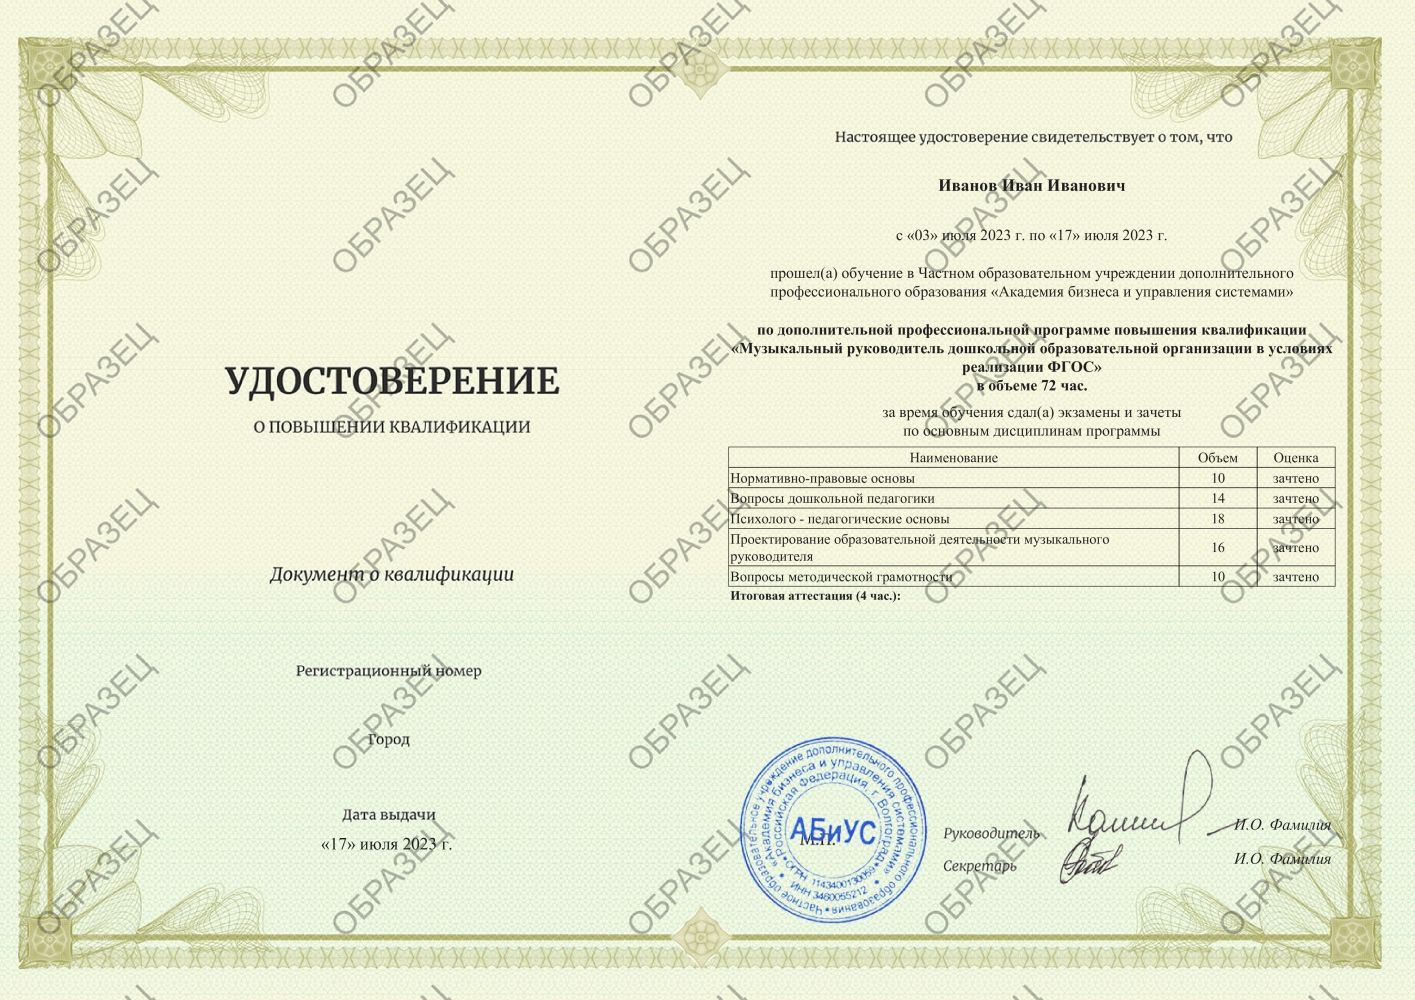 Удостоверение Музыкальный руководитель дошкольной образовательной организации в условиях реализации ФГОС 72 часа 3688 руб.